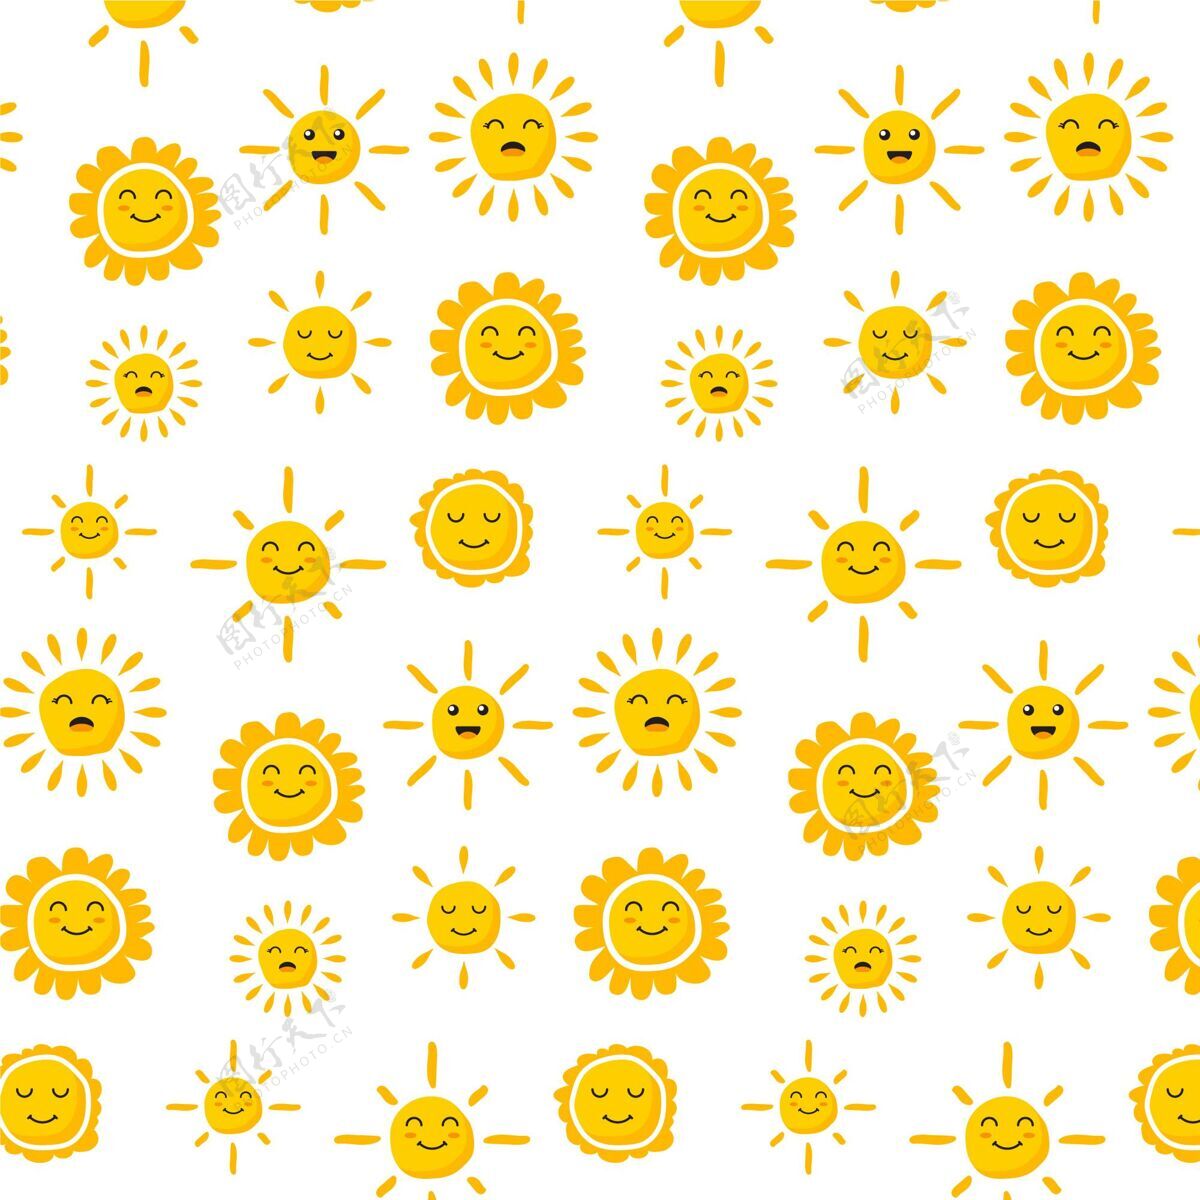 平面设计平面设计太阳图案图案壁纸五颜六色